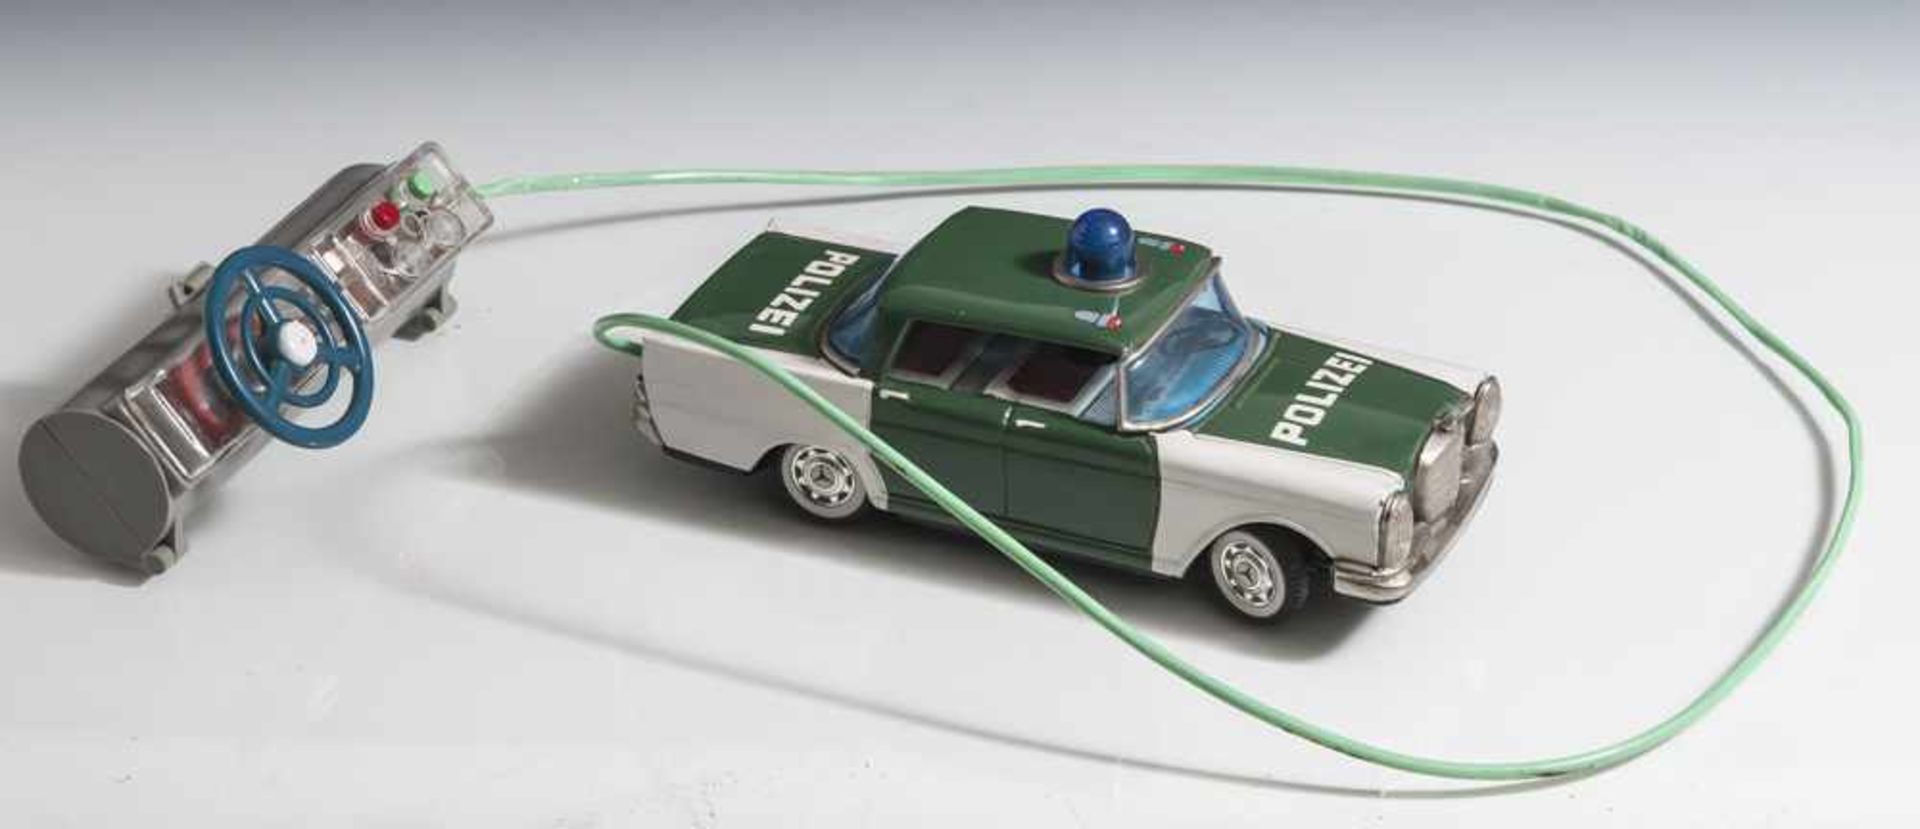 Polizeiauto mit Fernbedienung, Mercedes Heckflosse, wohl 1970er Jahre, auf Fernbedienung bez. "